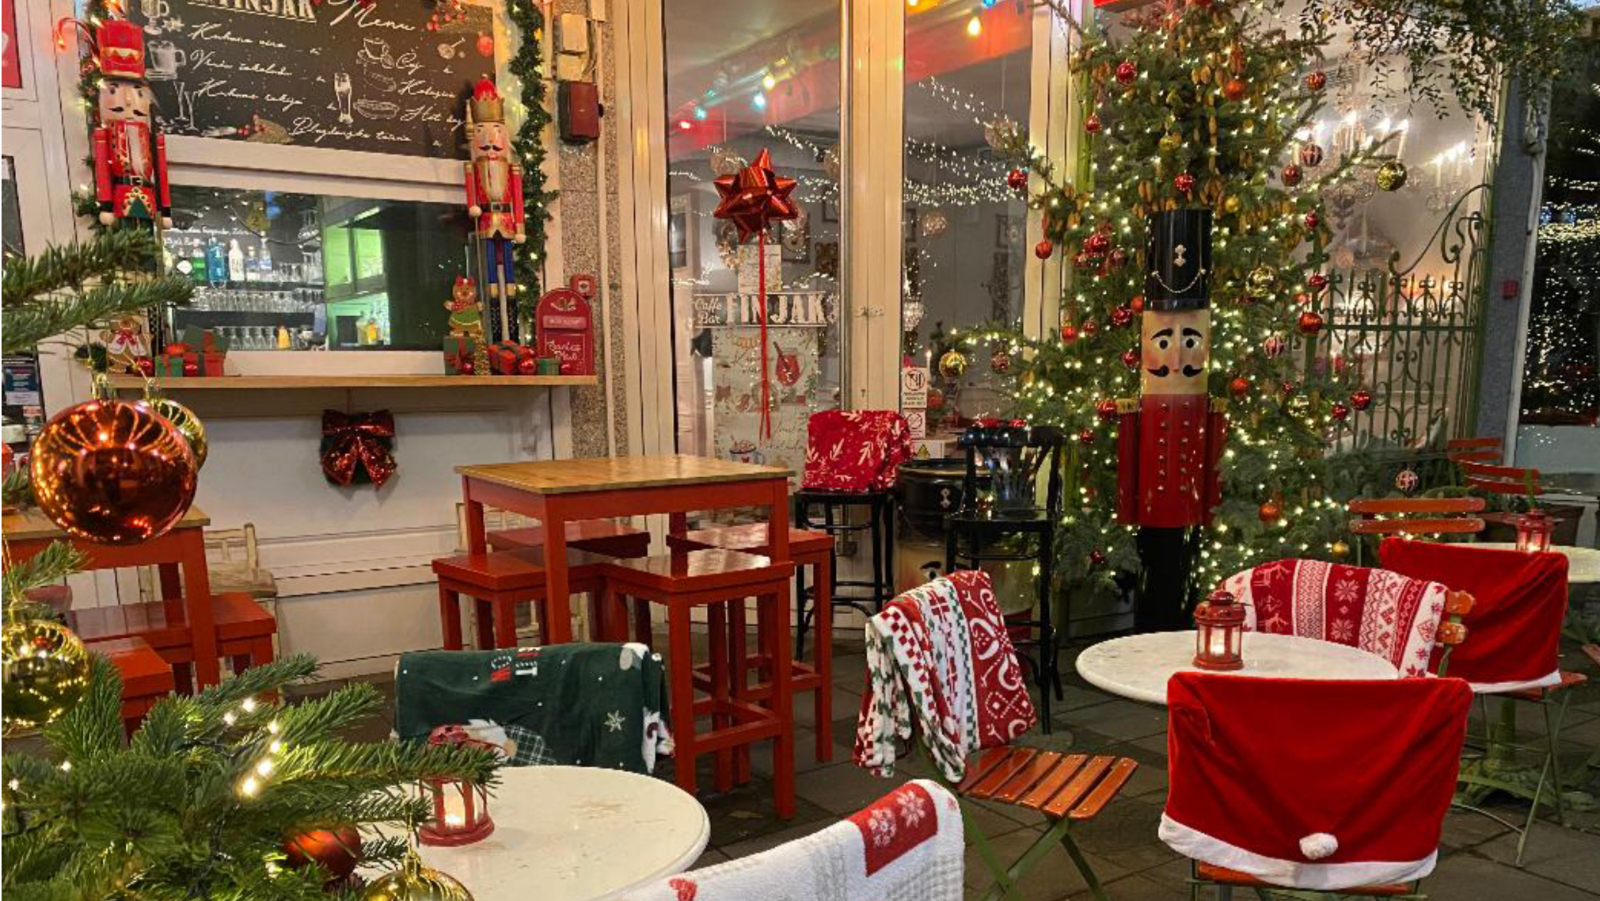 U caffe bar Finjak stigla je najljepša božićna bajka, jedva ju čekamo posjetiti